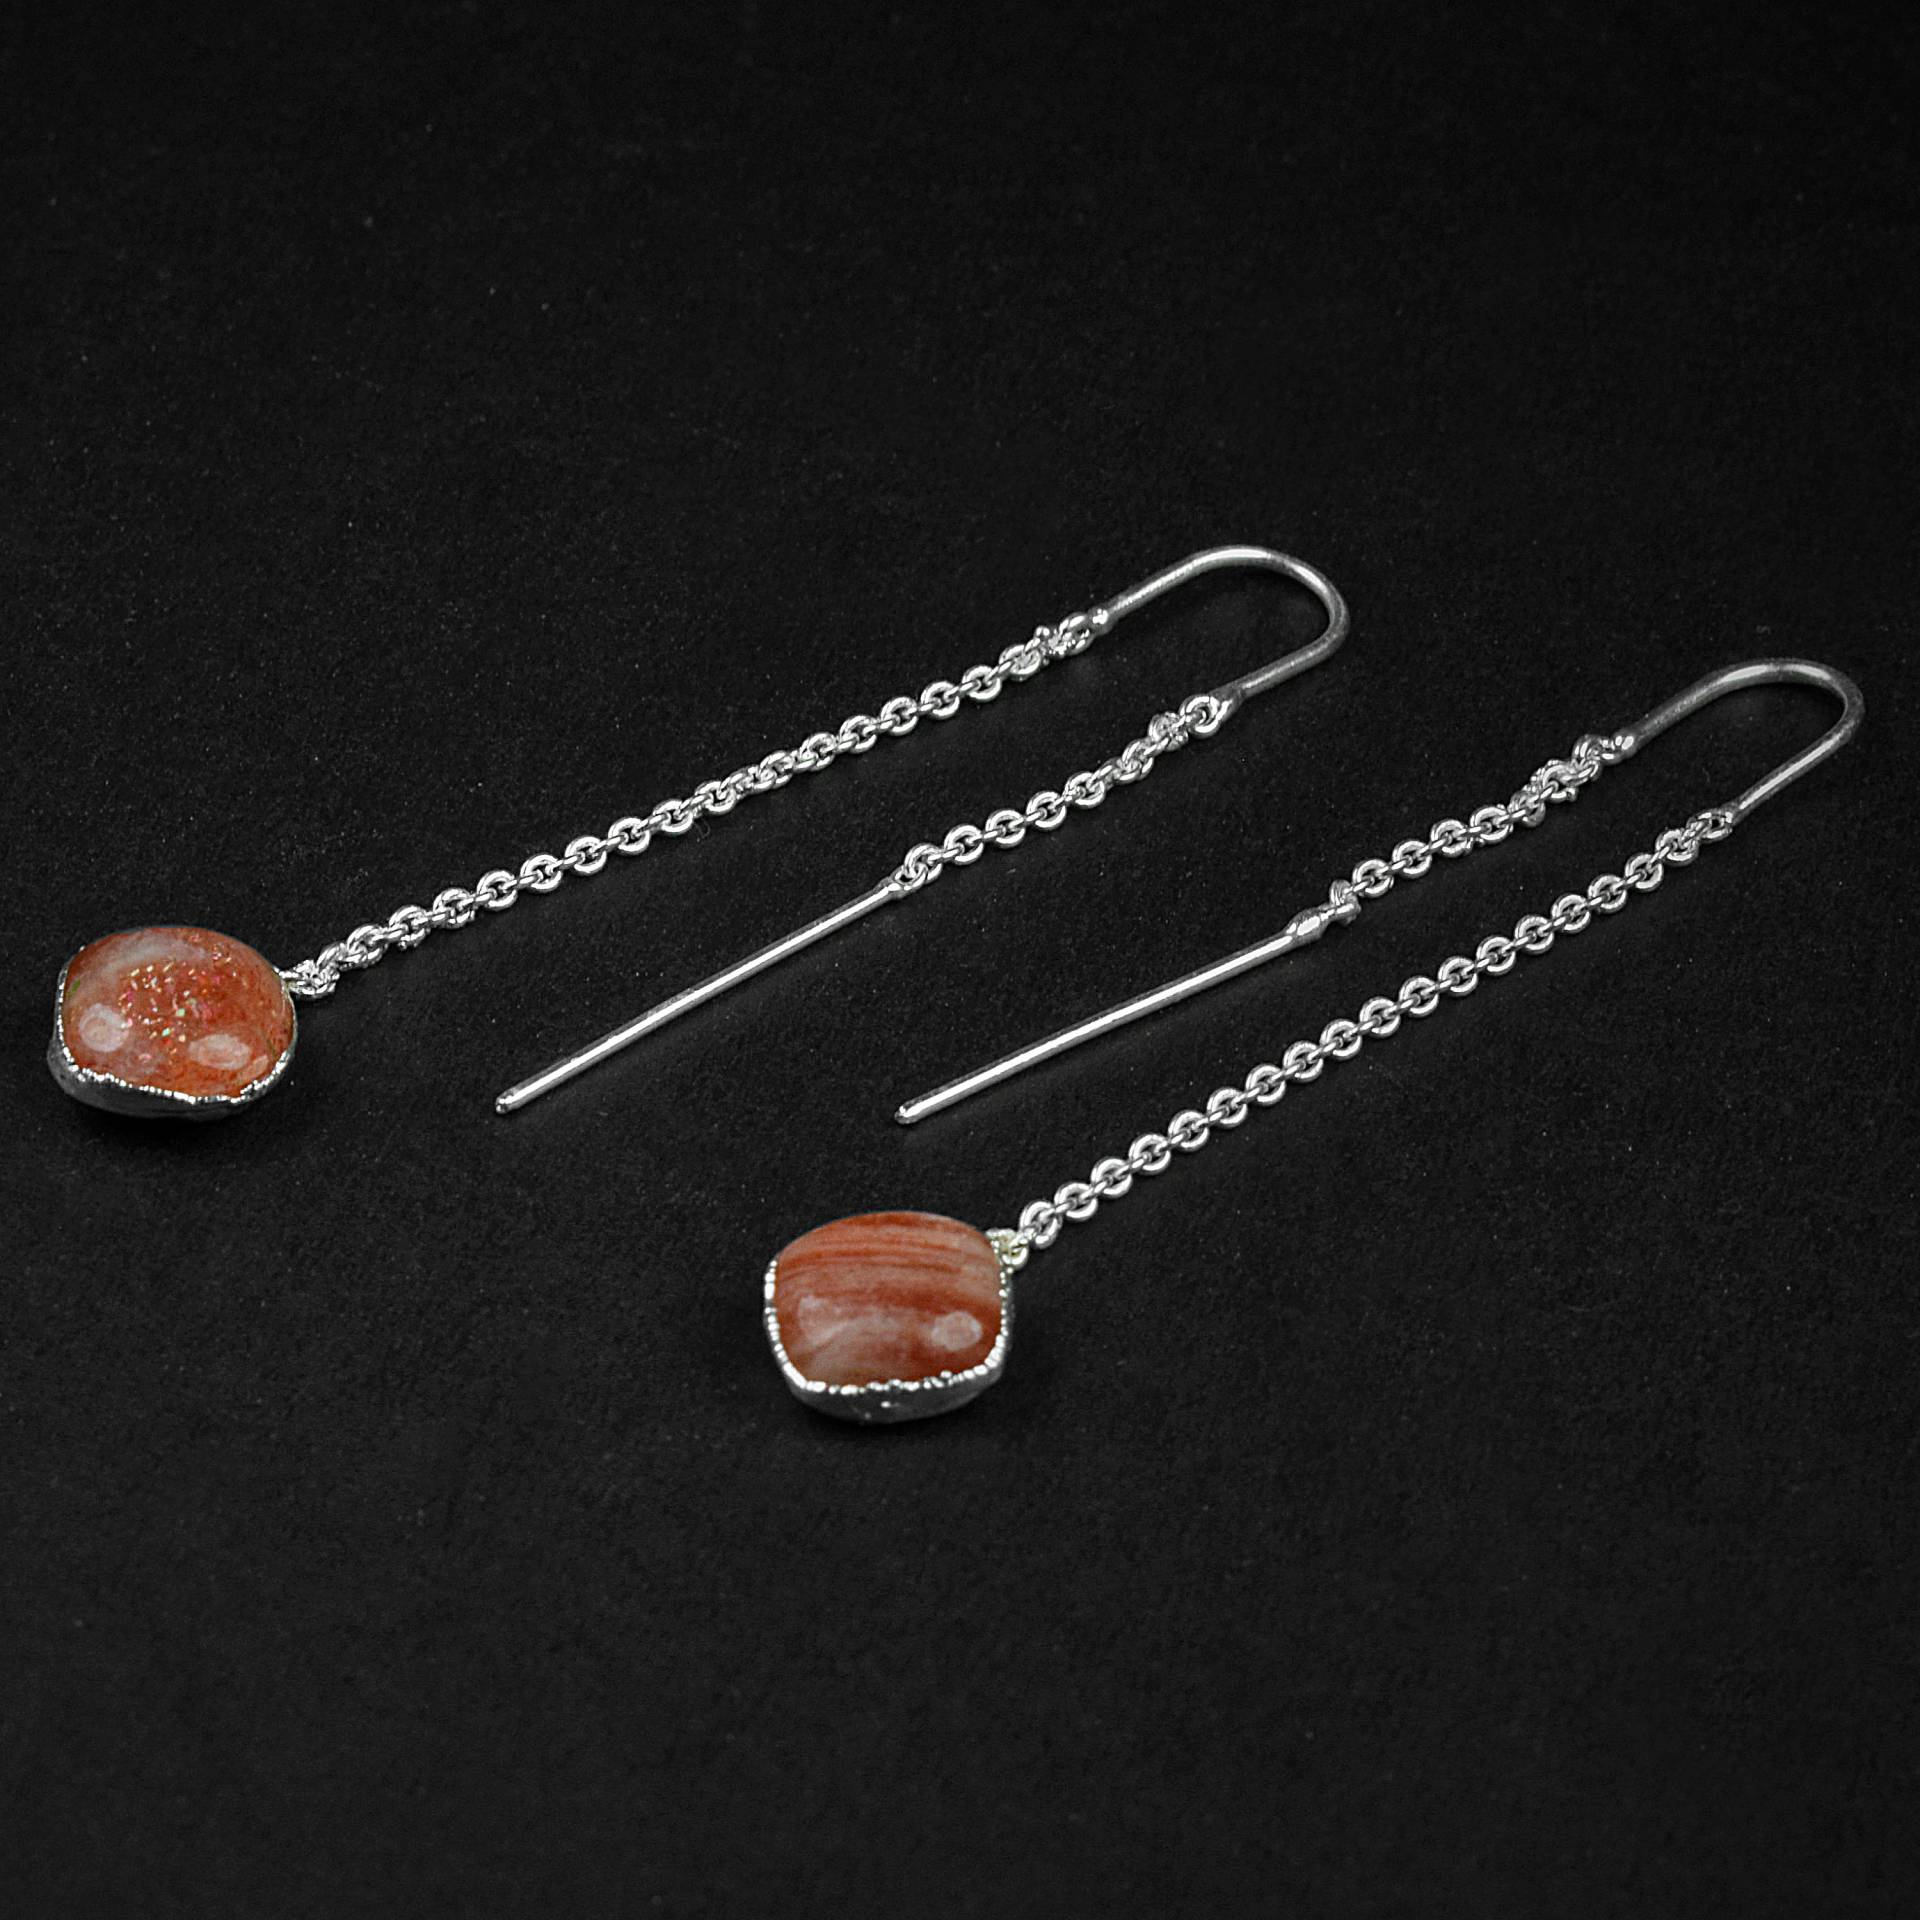 Handgefertigte Ohrringe Aus Rotem Sonnenstein, Messing Ohrringe, Edelstein Kettenohrringe von GemFormingStudio